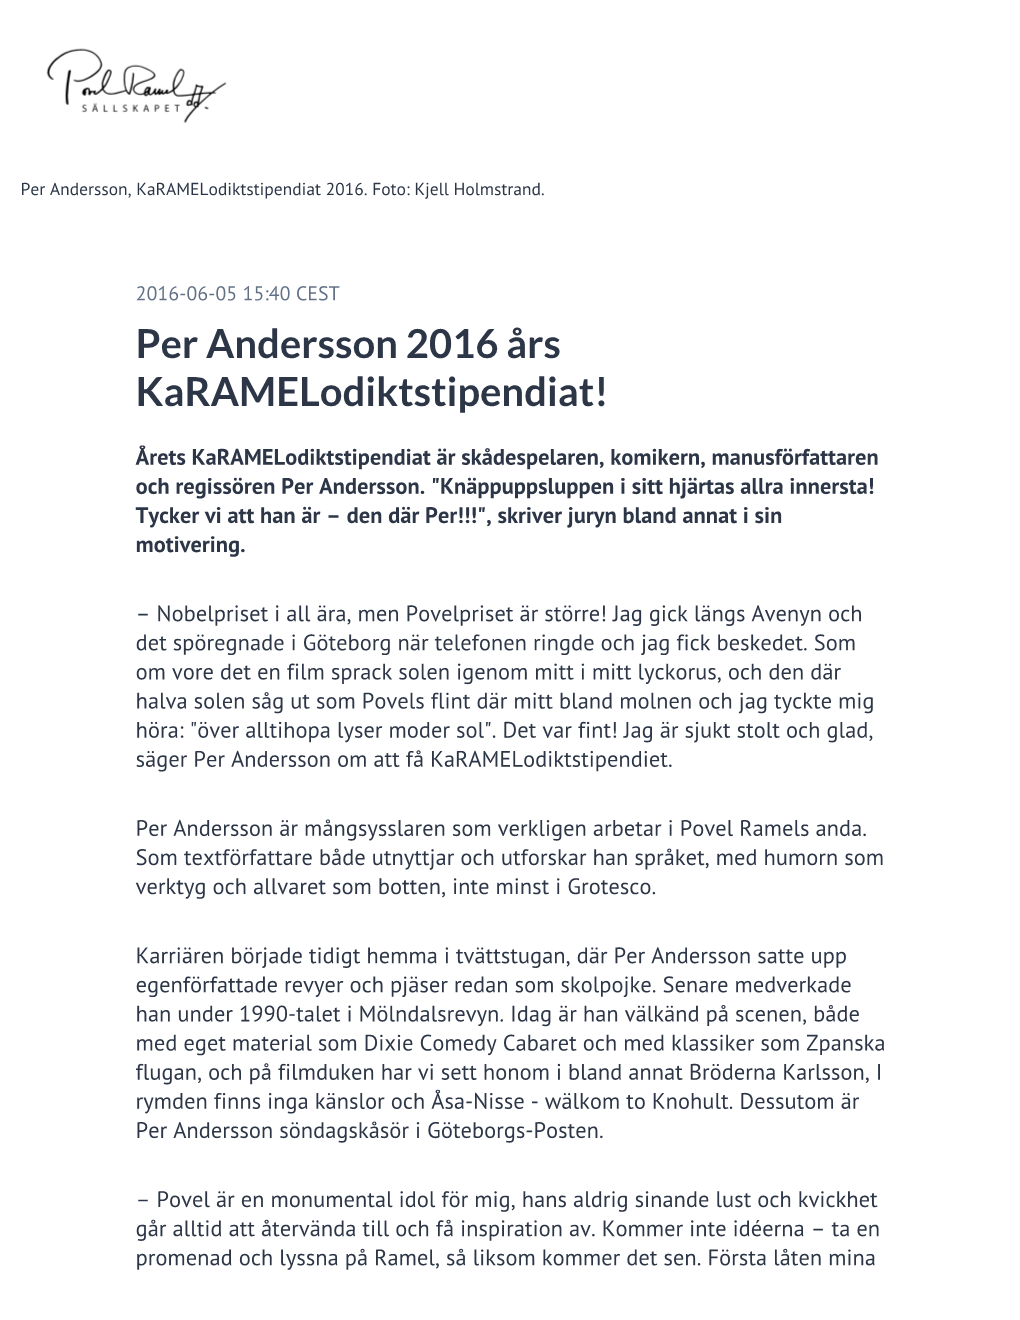 Per Andersson 2016 Års Karamelodiktstipendiat!